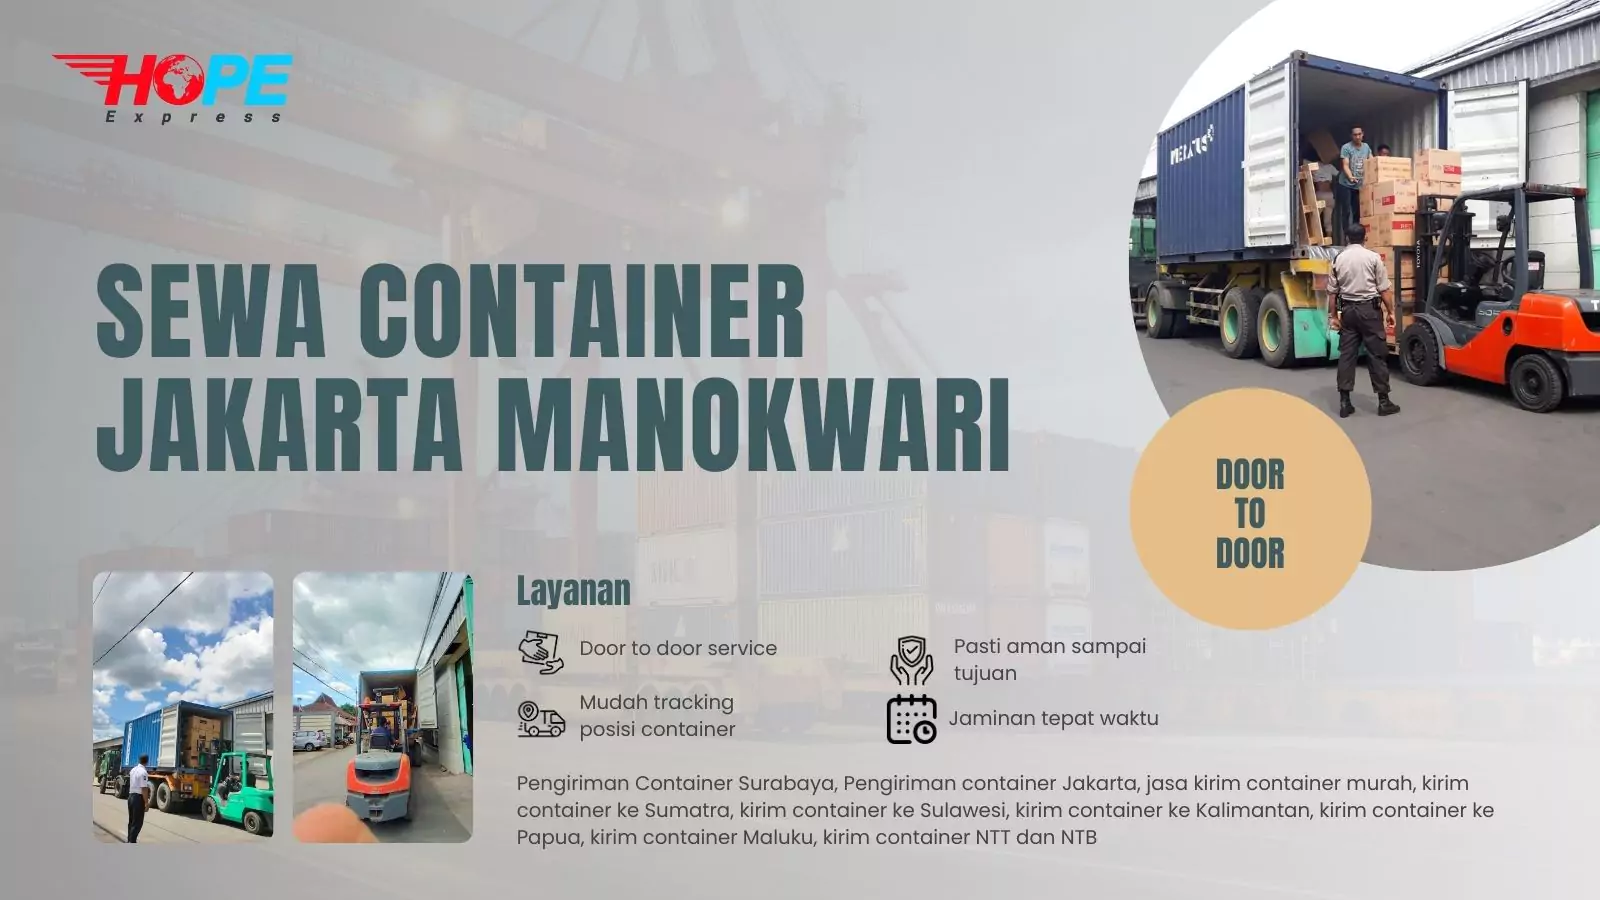 Sewa Container Jakarta Manokwari